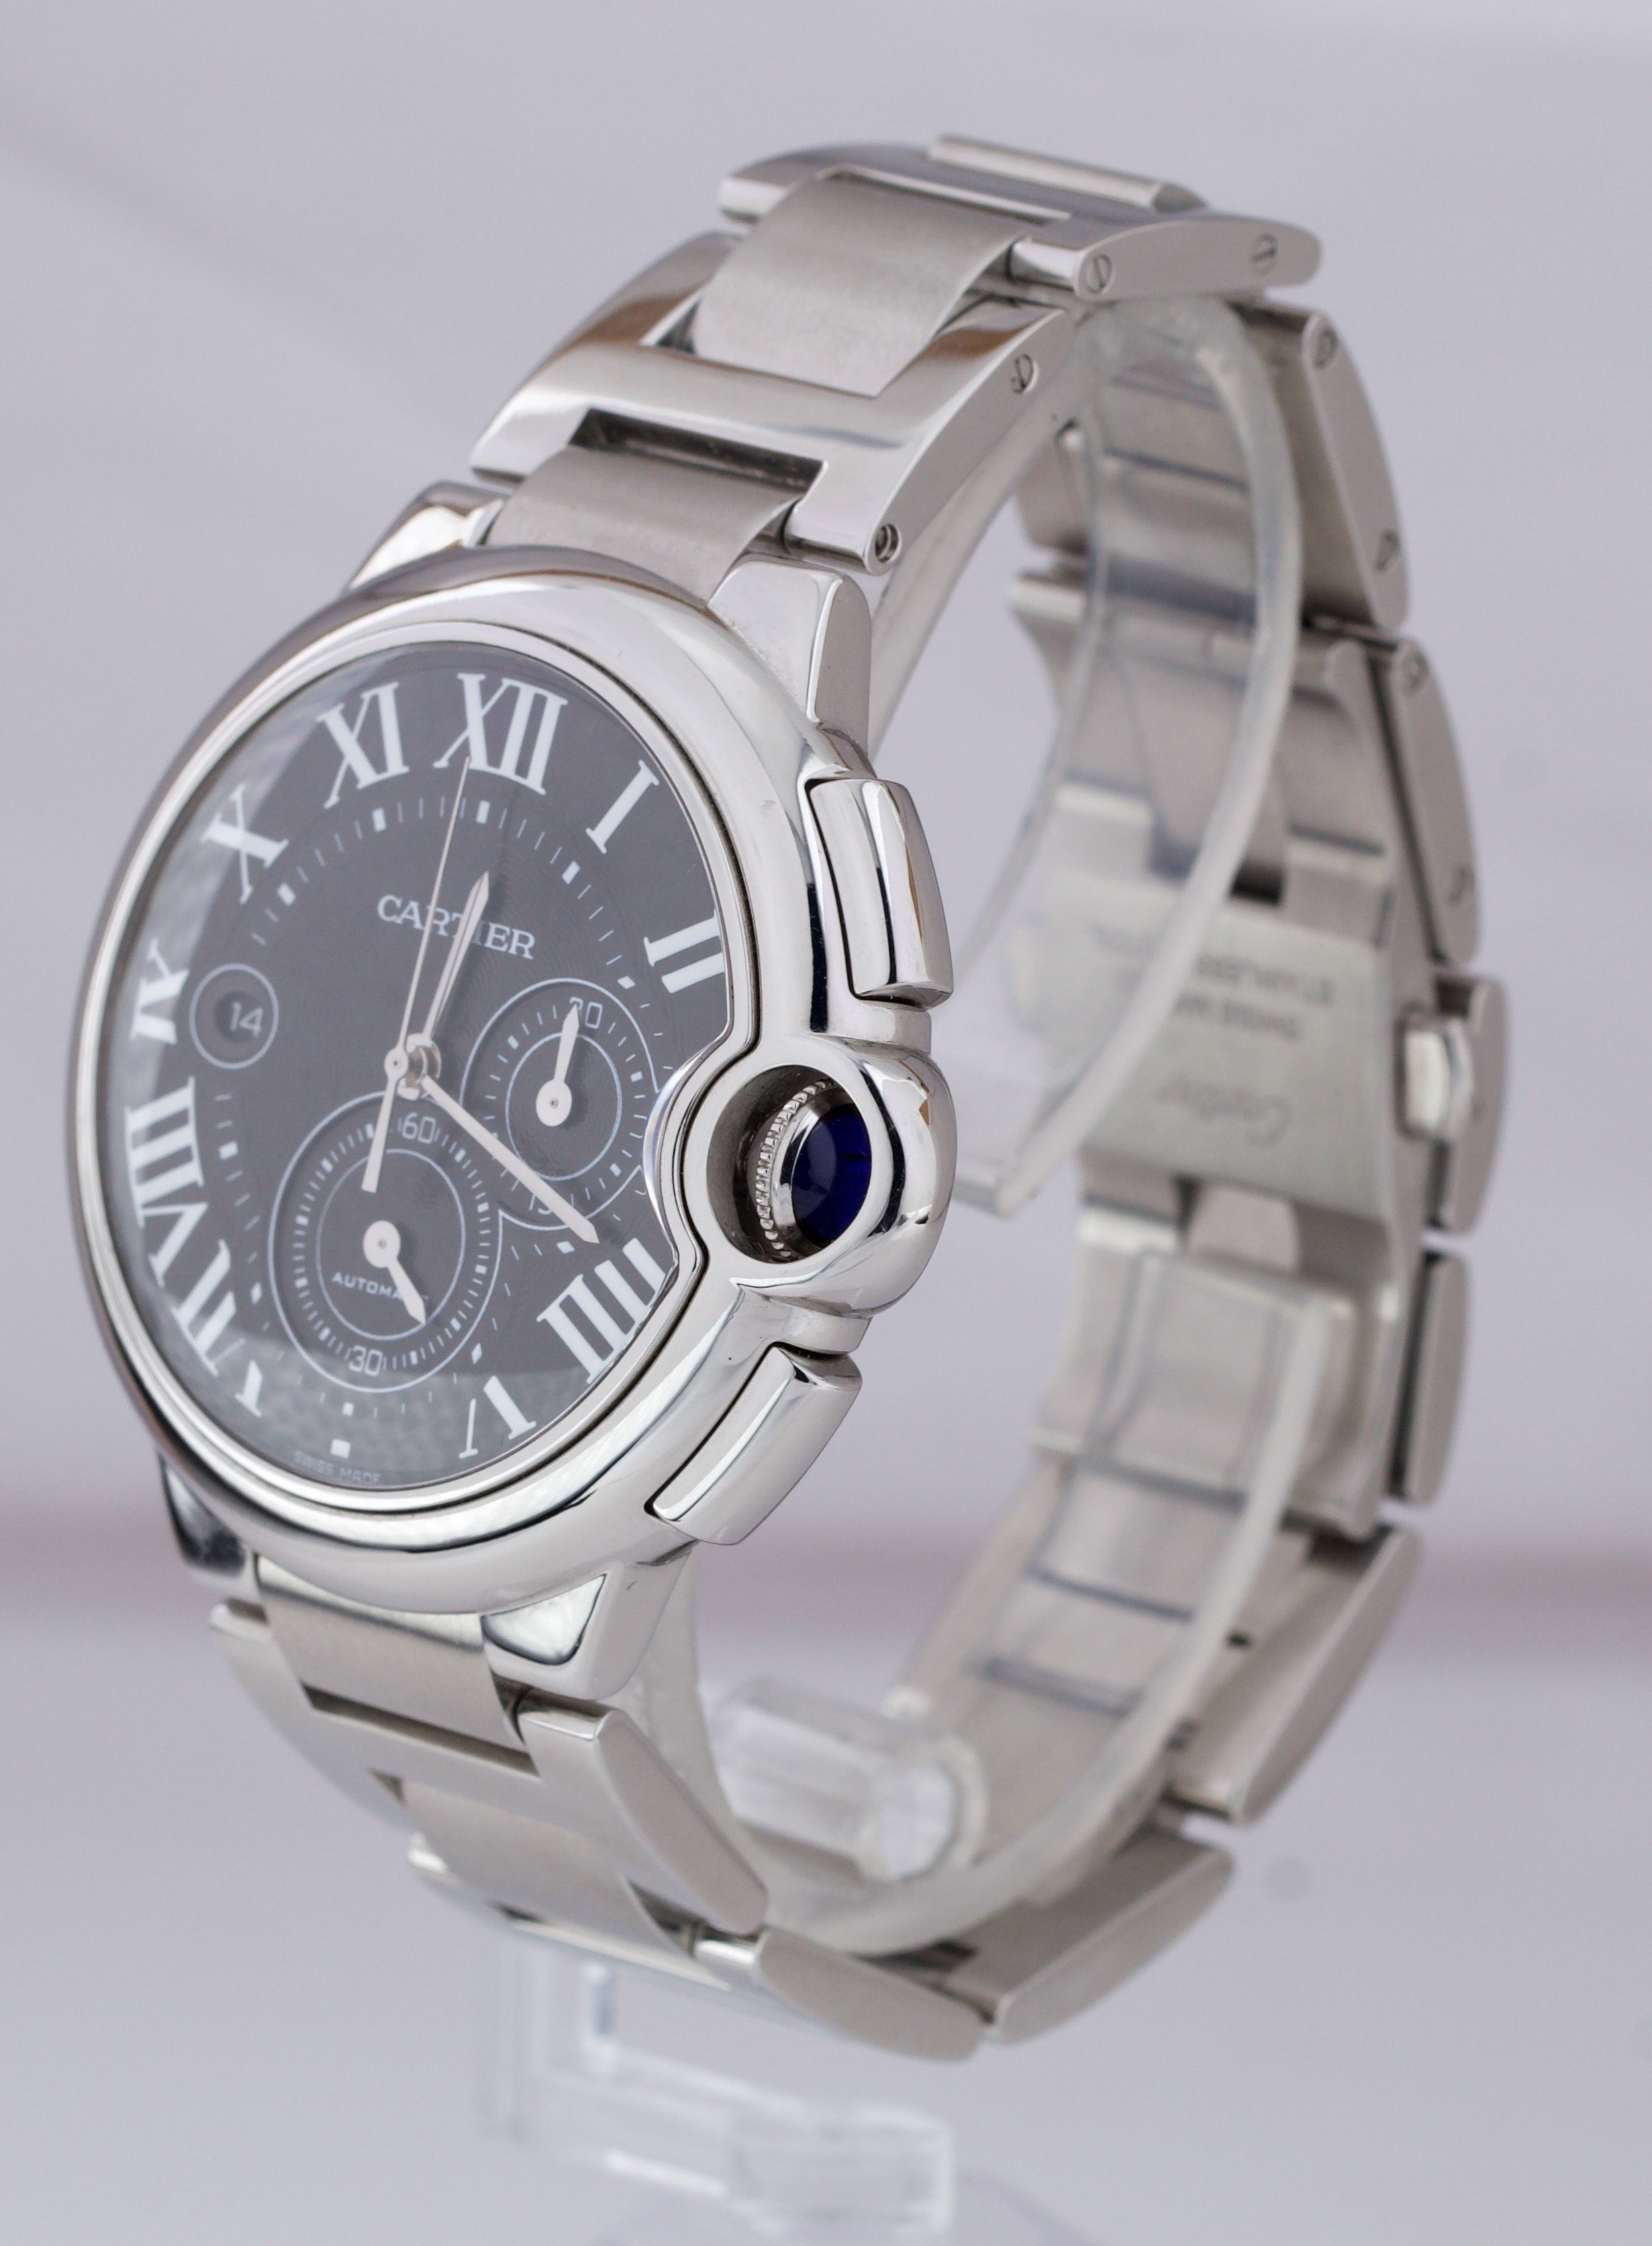 Cartier Ballon Bleu Chronograph Automatic 44mm Stainless W6920077 3109 Watch